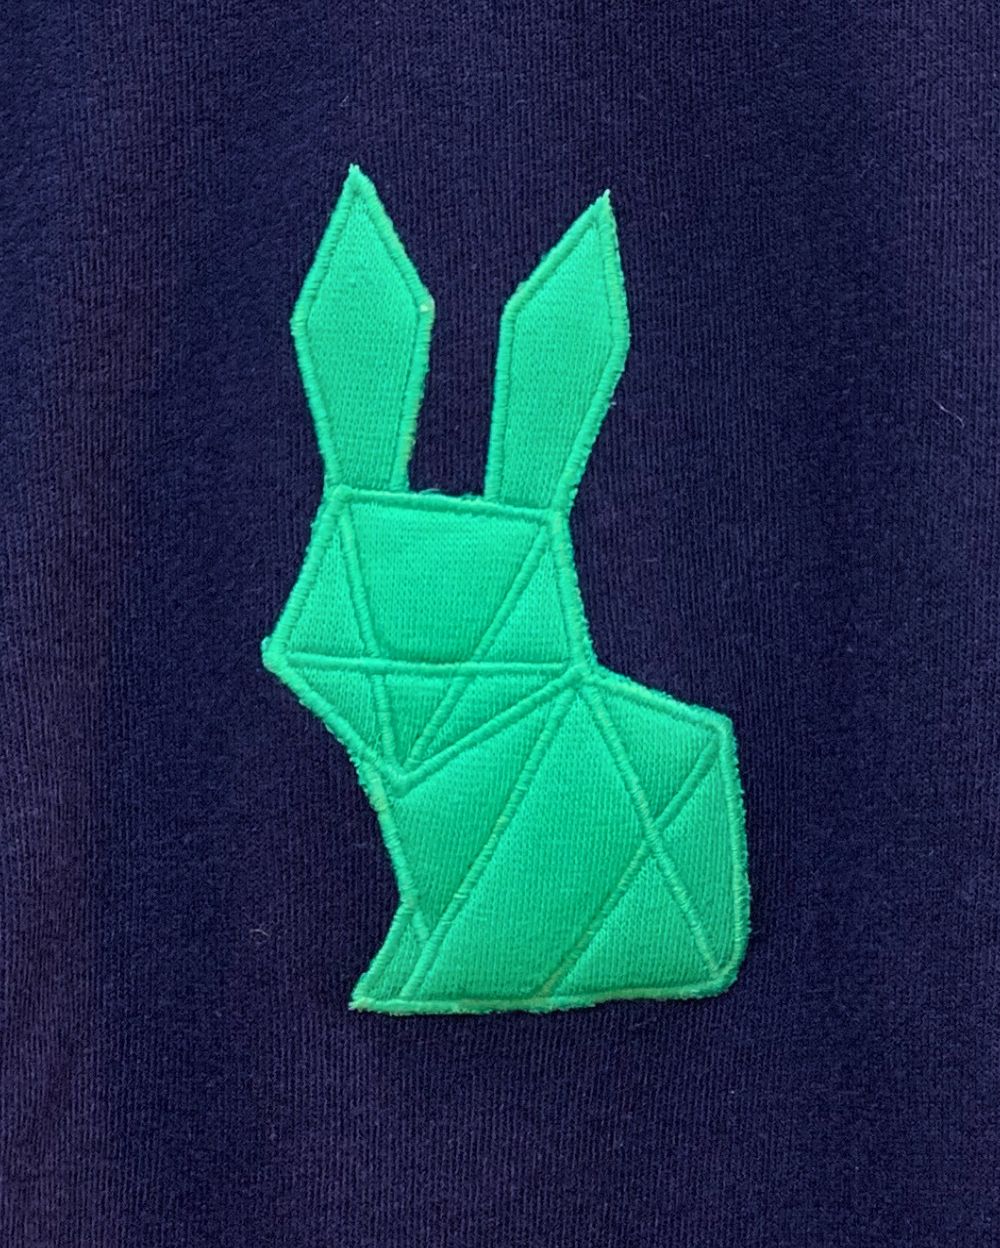 Adorable Bunny Sweatshirt